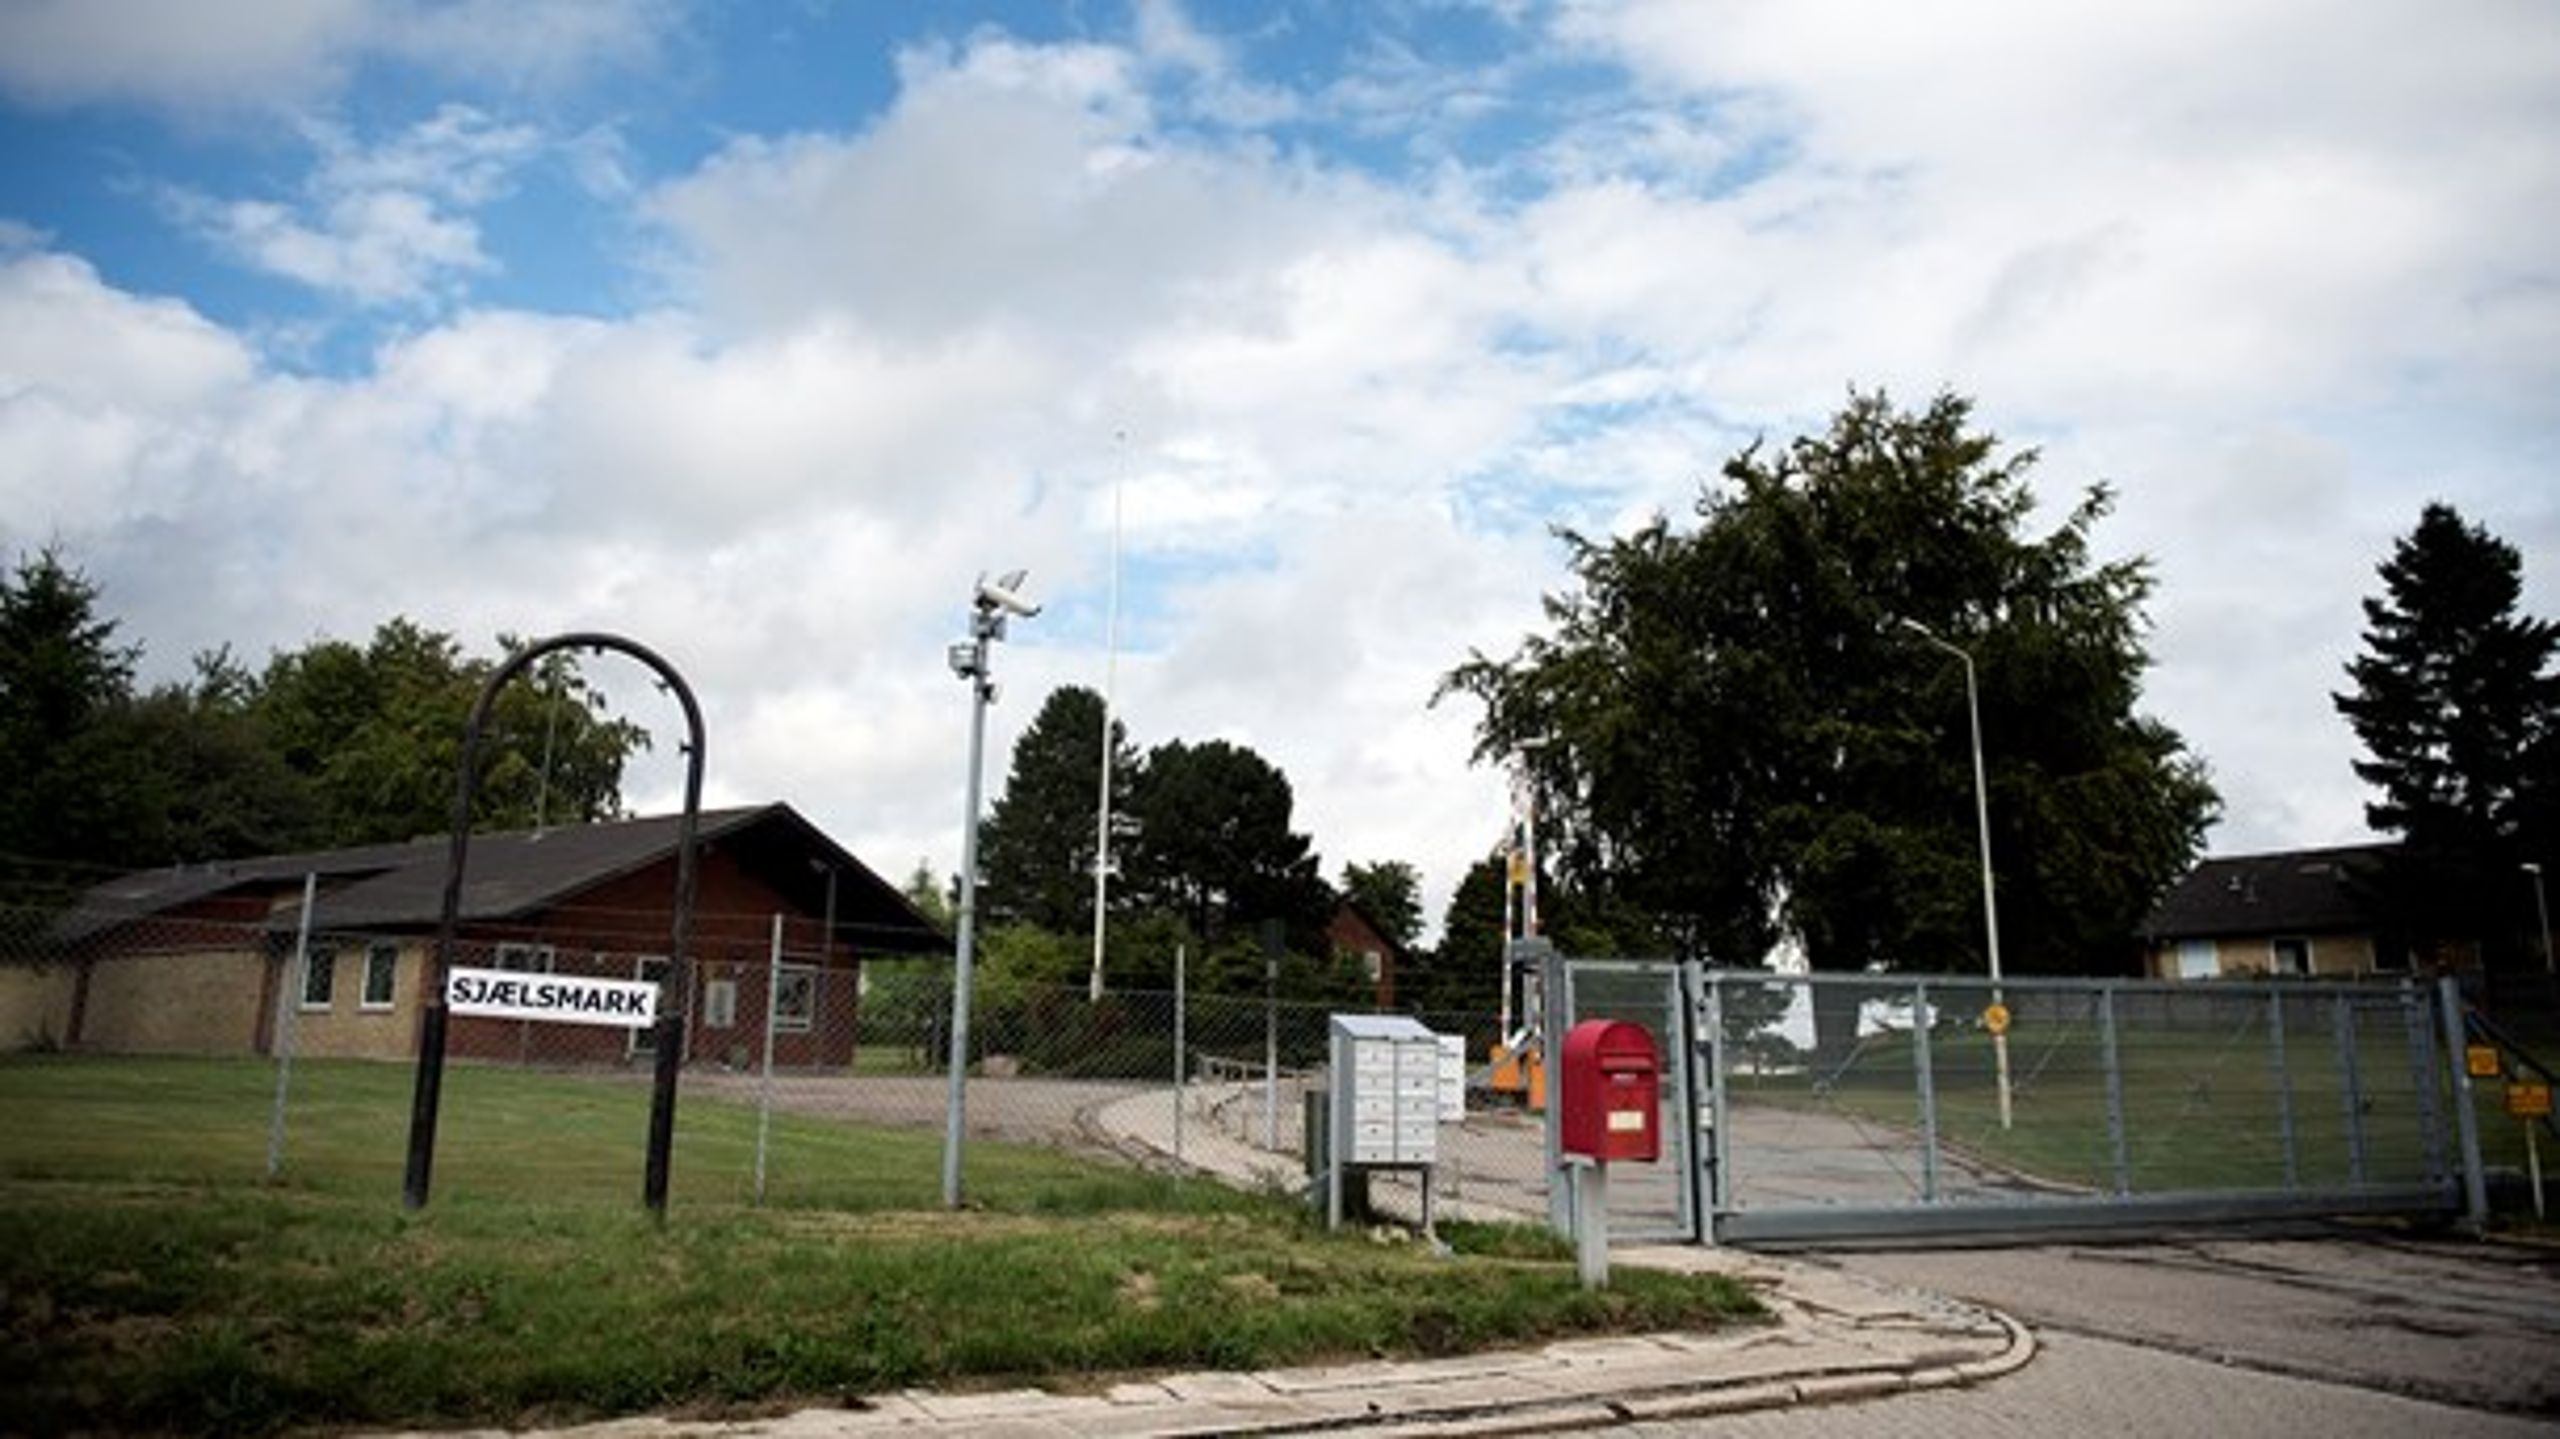 I 2015 blev den gamle kaserne til Udrejsecenter Sjælsmark.